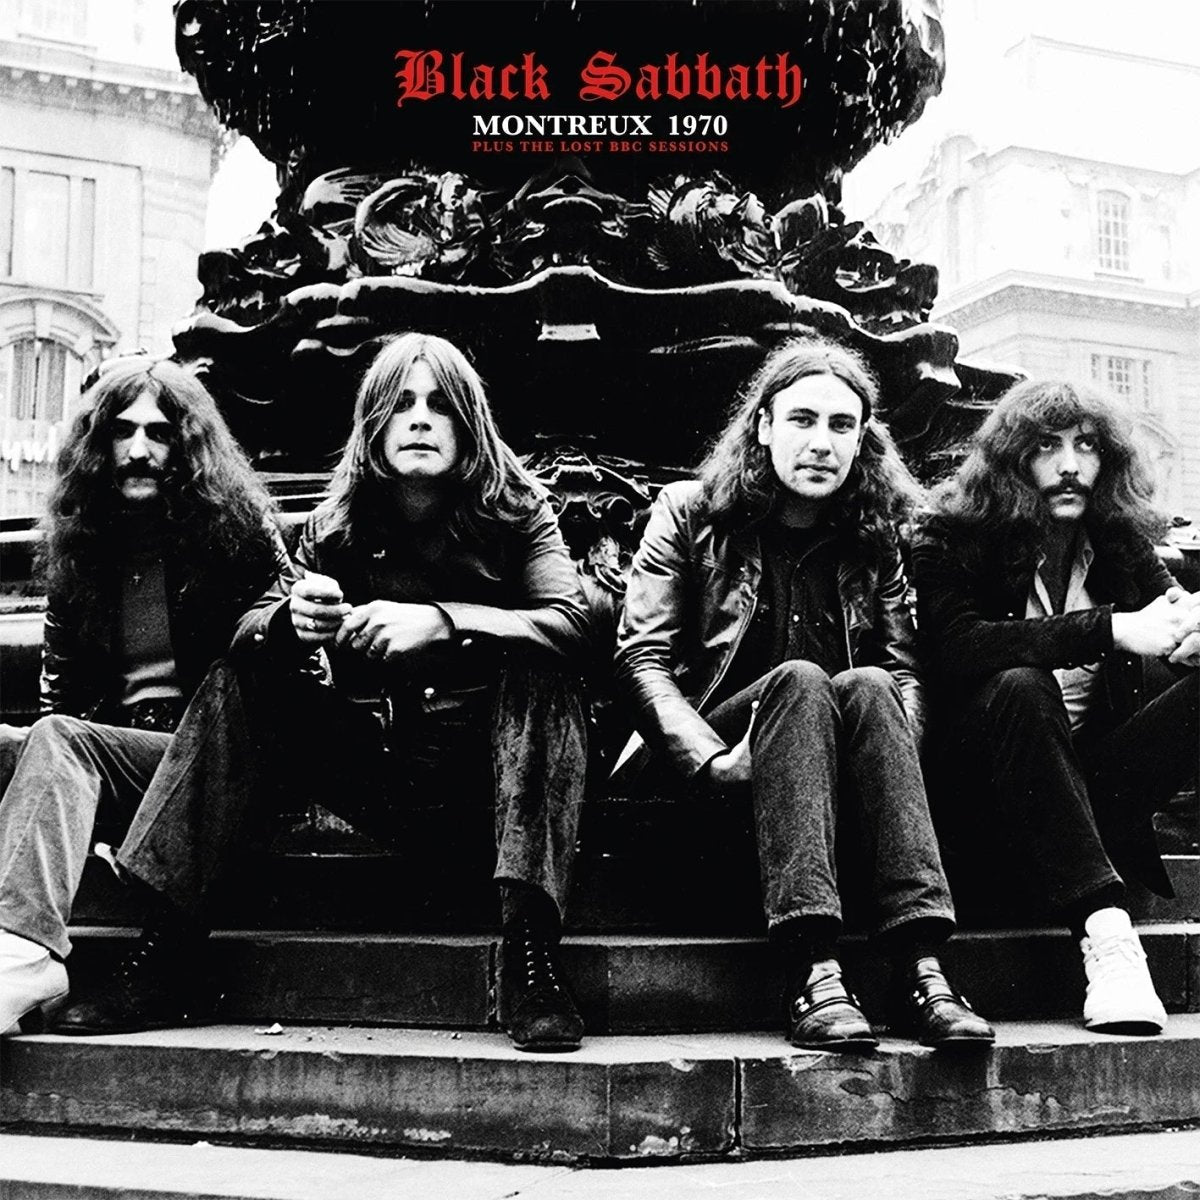 Black Sabbath – Montreux 1970 Records & LPs Vinyl